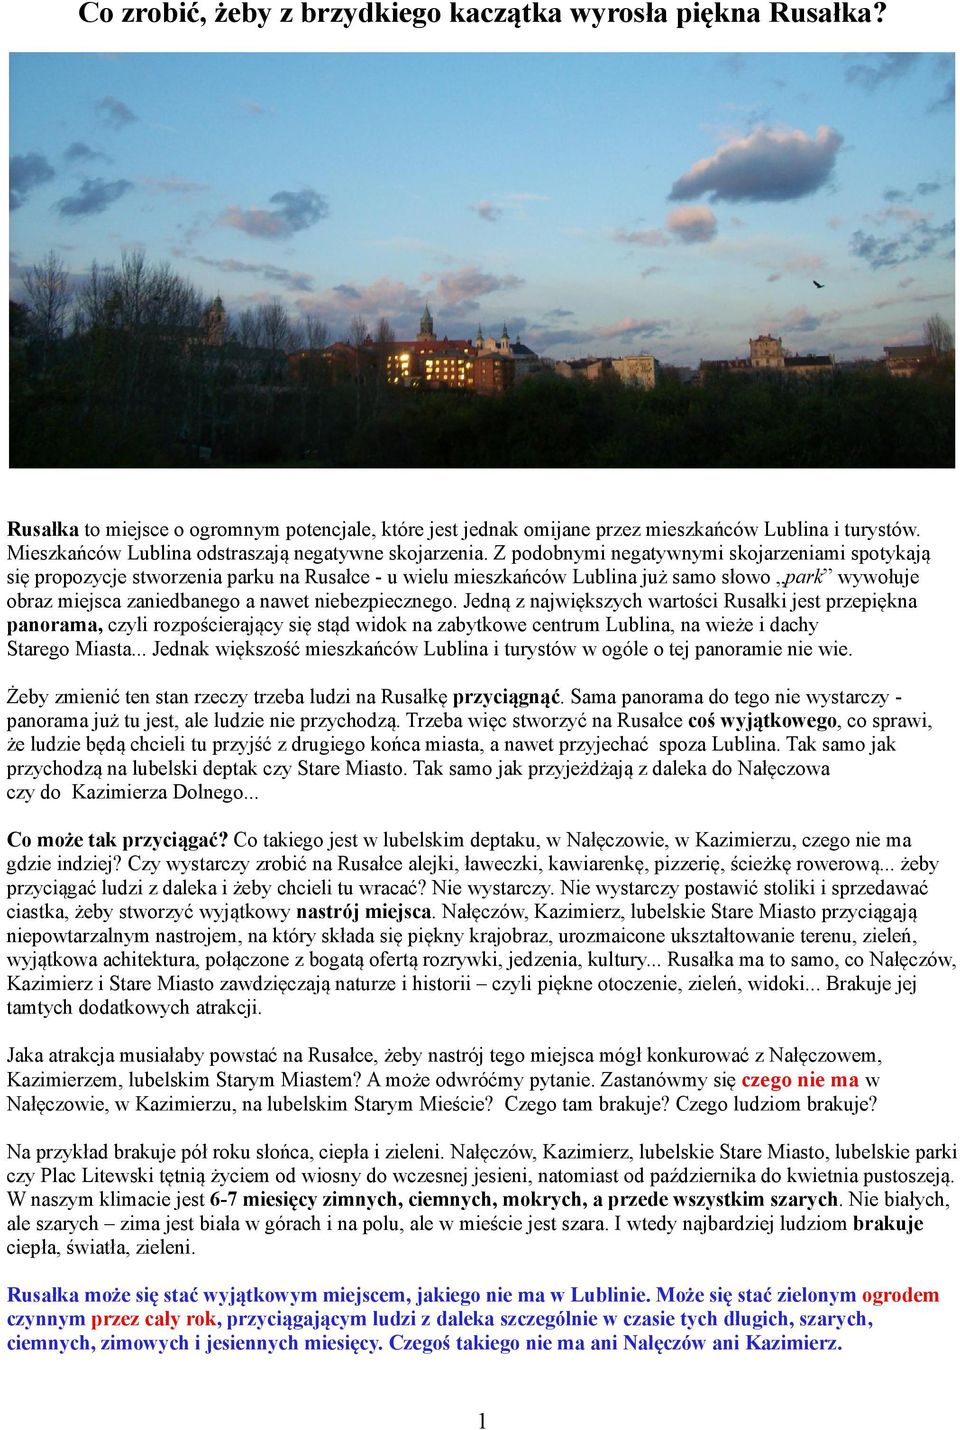 Z podobnymi negatywnymi skojarzeniami spotykają się propozycje stworzenia parku na Rusałce - u wielu mieszkańców Lublina już samo słowo park wywołuje obraz miejsca zaniedbanego a nawet